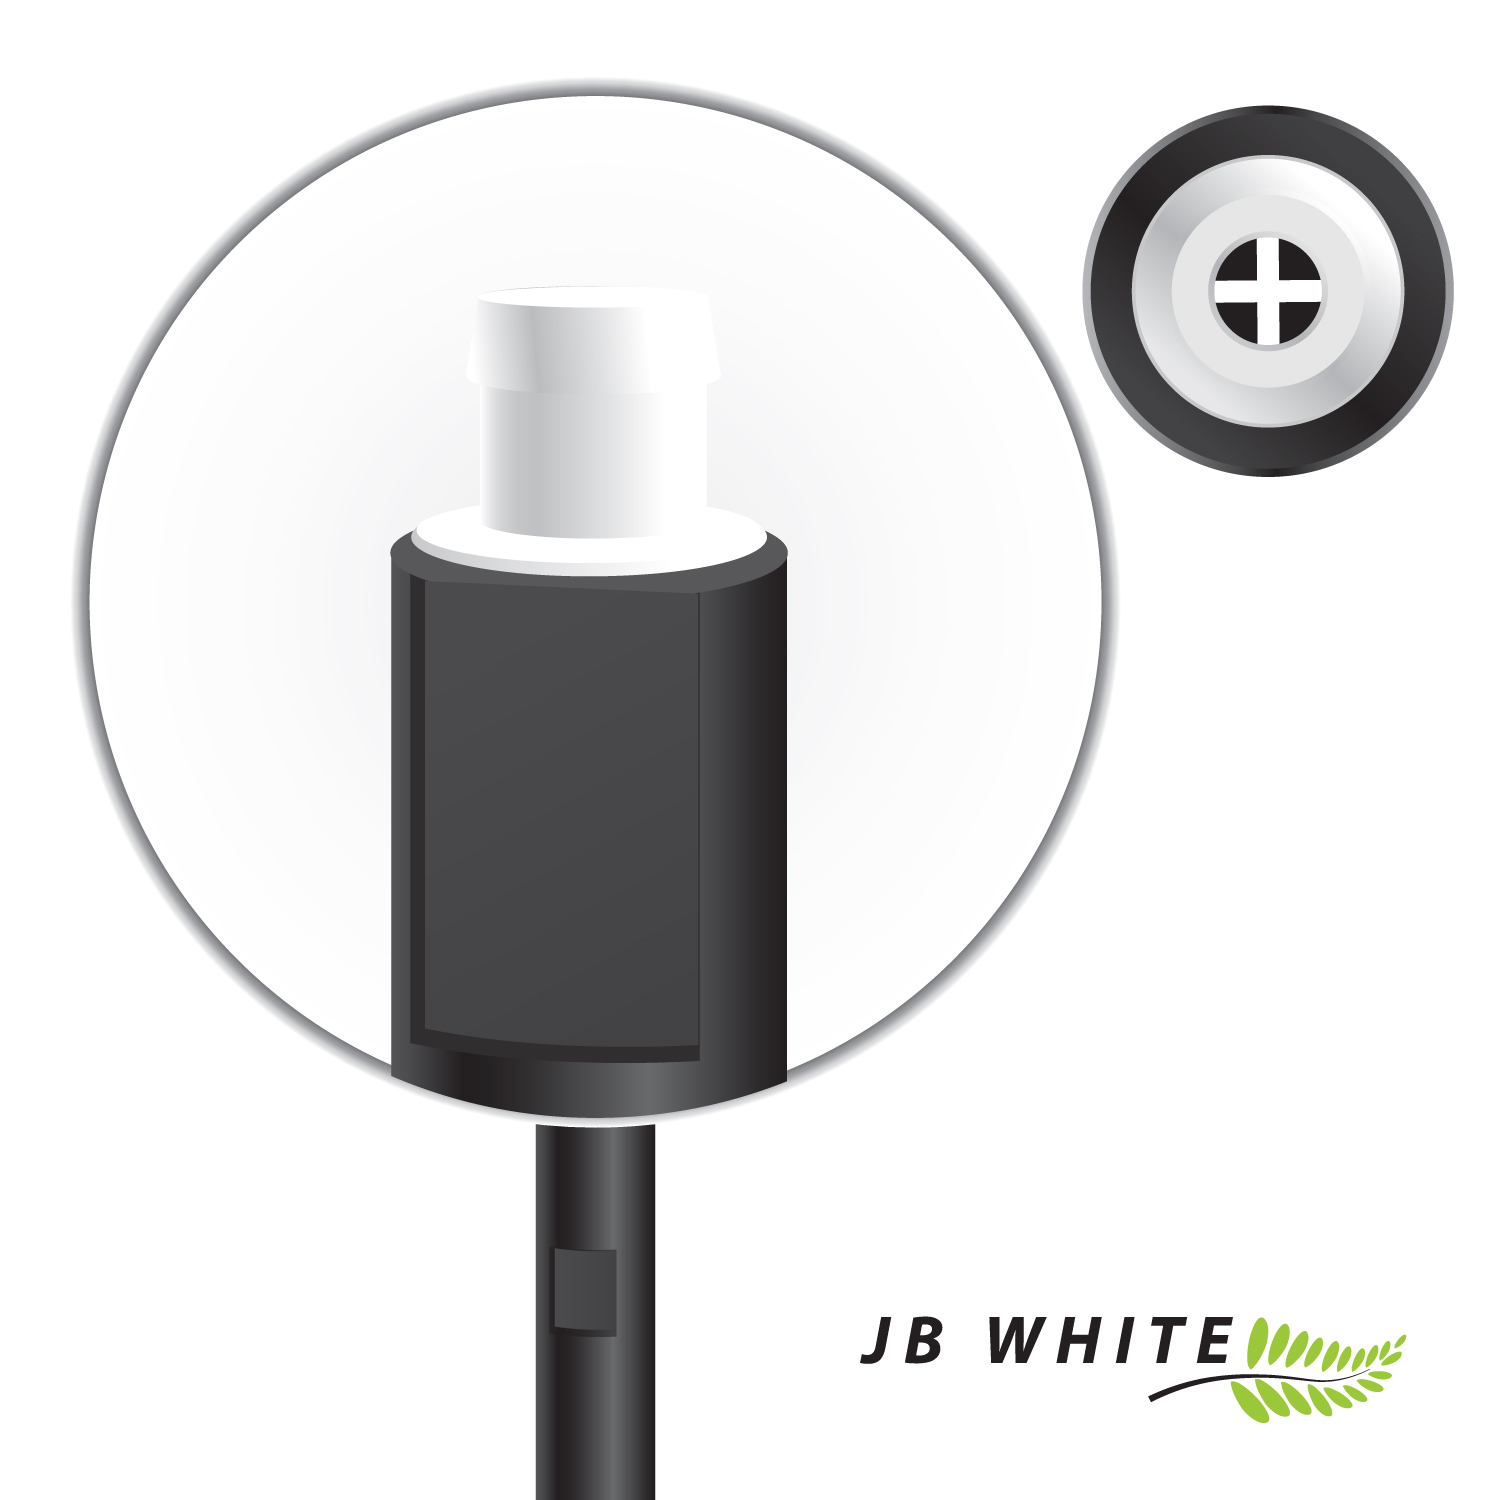 Hörgeräte MiniR Wax für JB Cerumenfilter WHITE